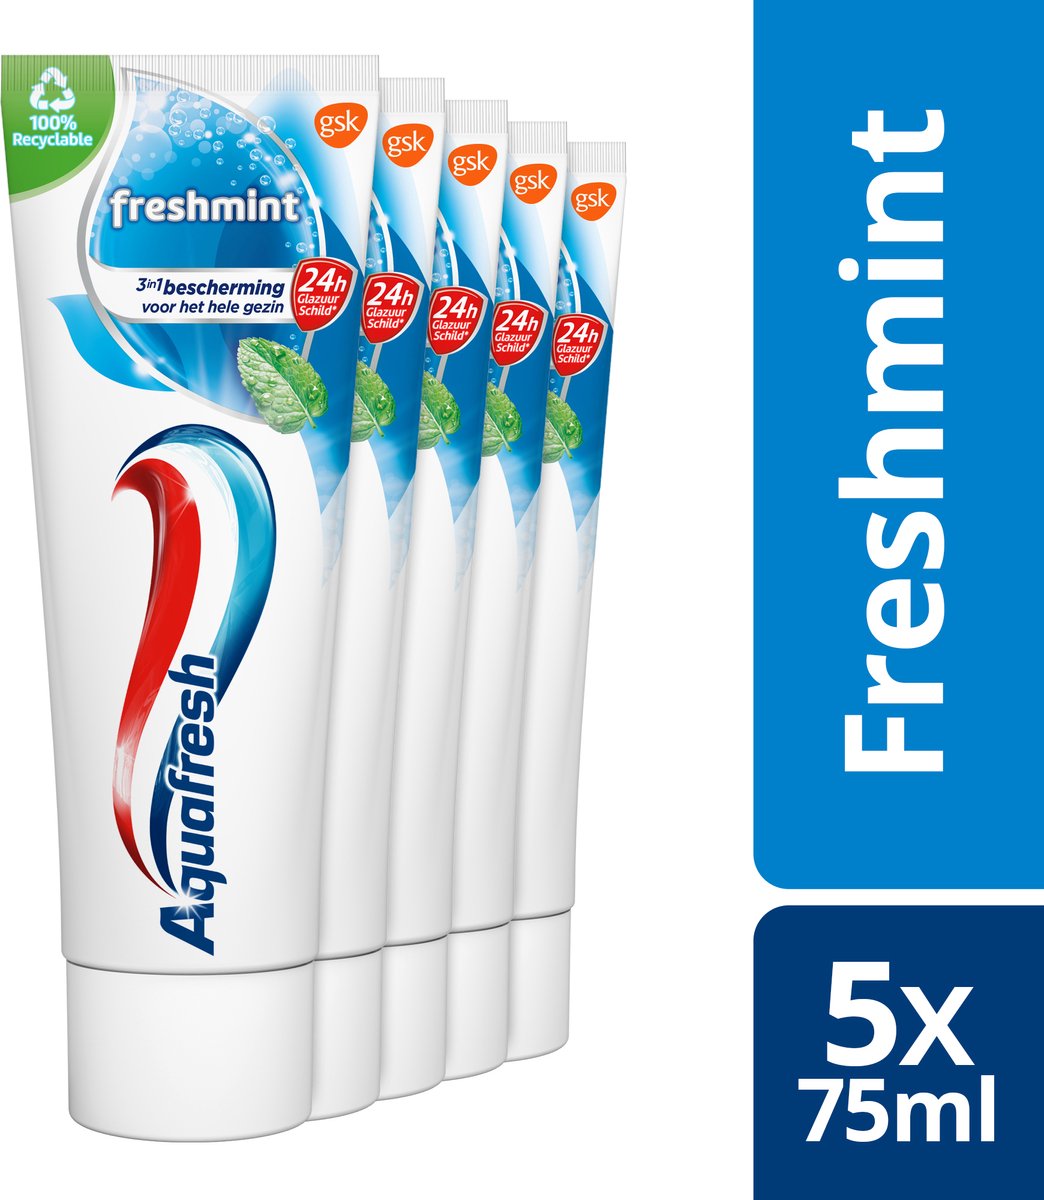 Aquafresh Freshmint 3in1 tandpasta voor een frisse adem voordeelverpakking 5 x 75ml, recyclebare plastic tube en dop - Aquafresh